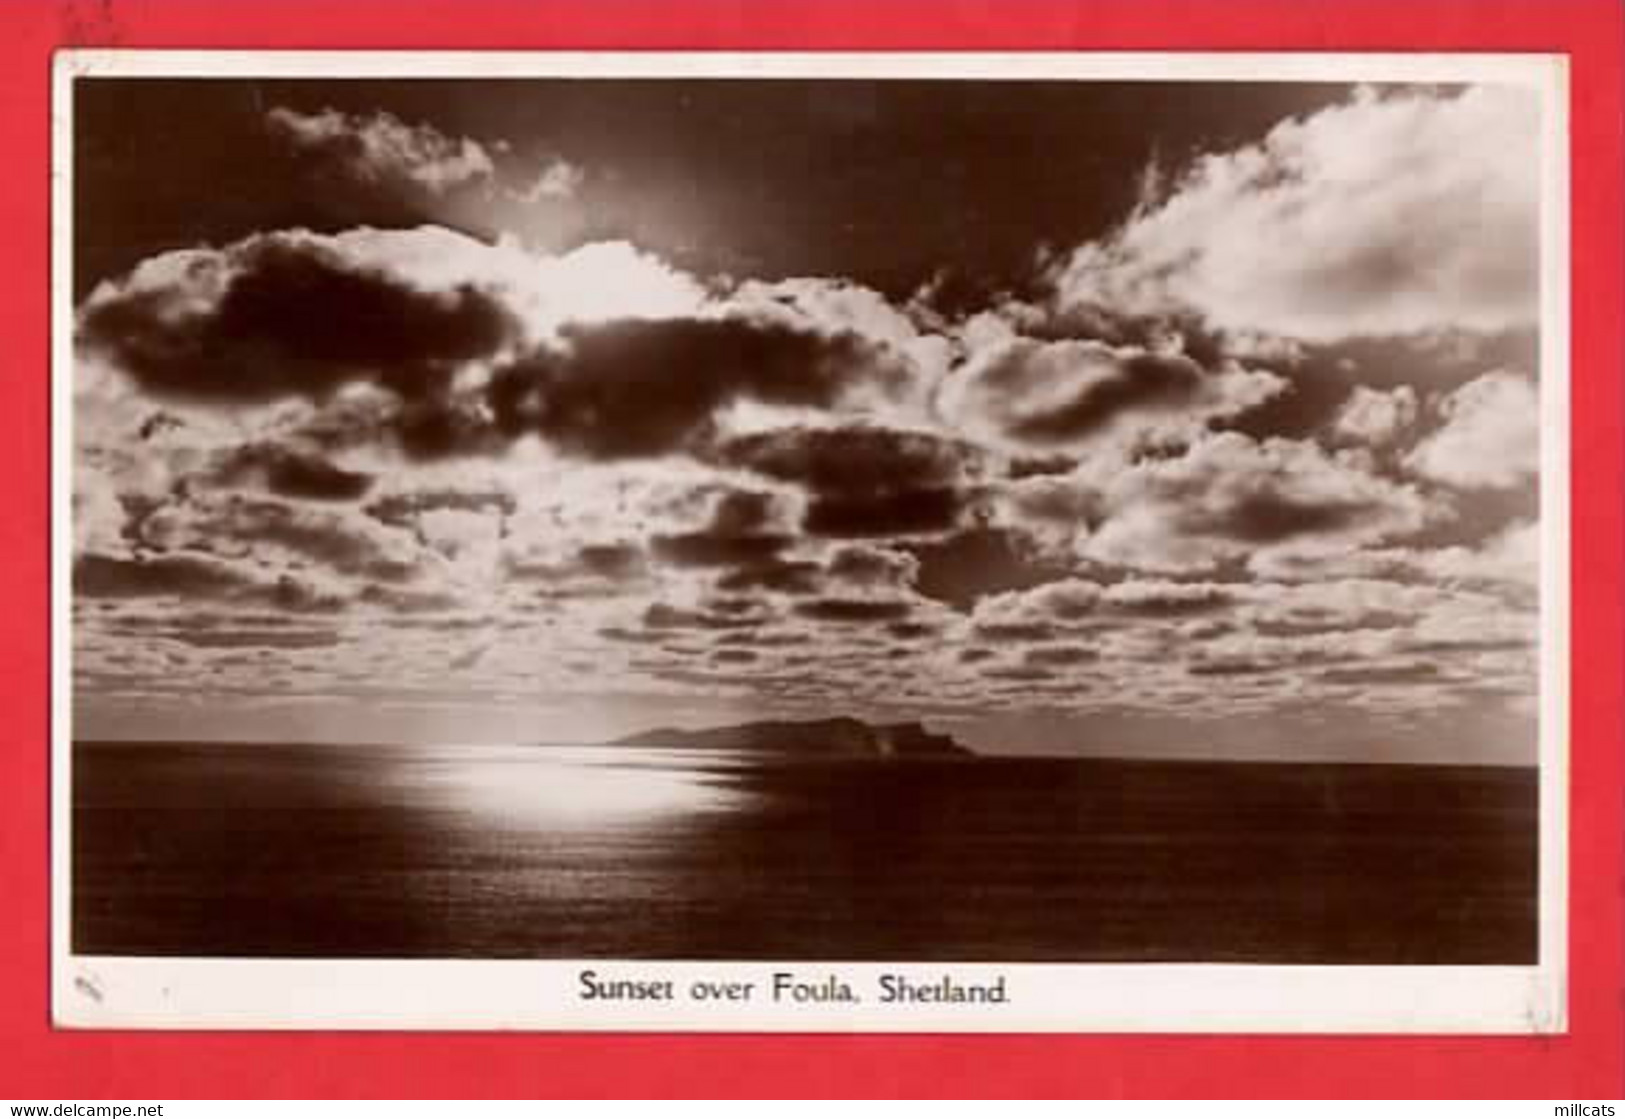 SCOTLAND SHETLAND      SUNSET OVER FOULA  RP   Pu 1950 - Shetland